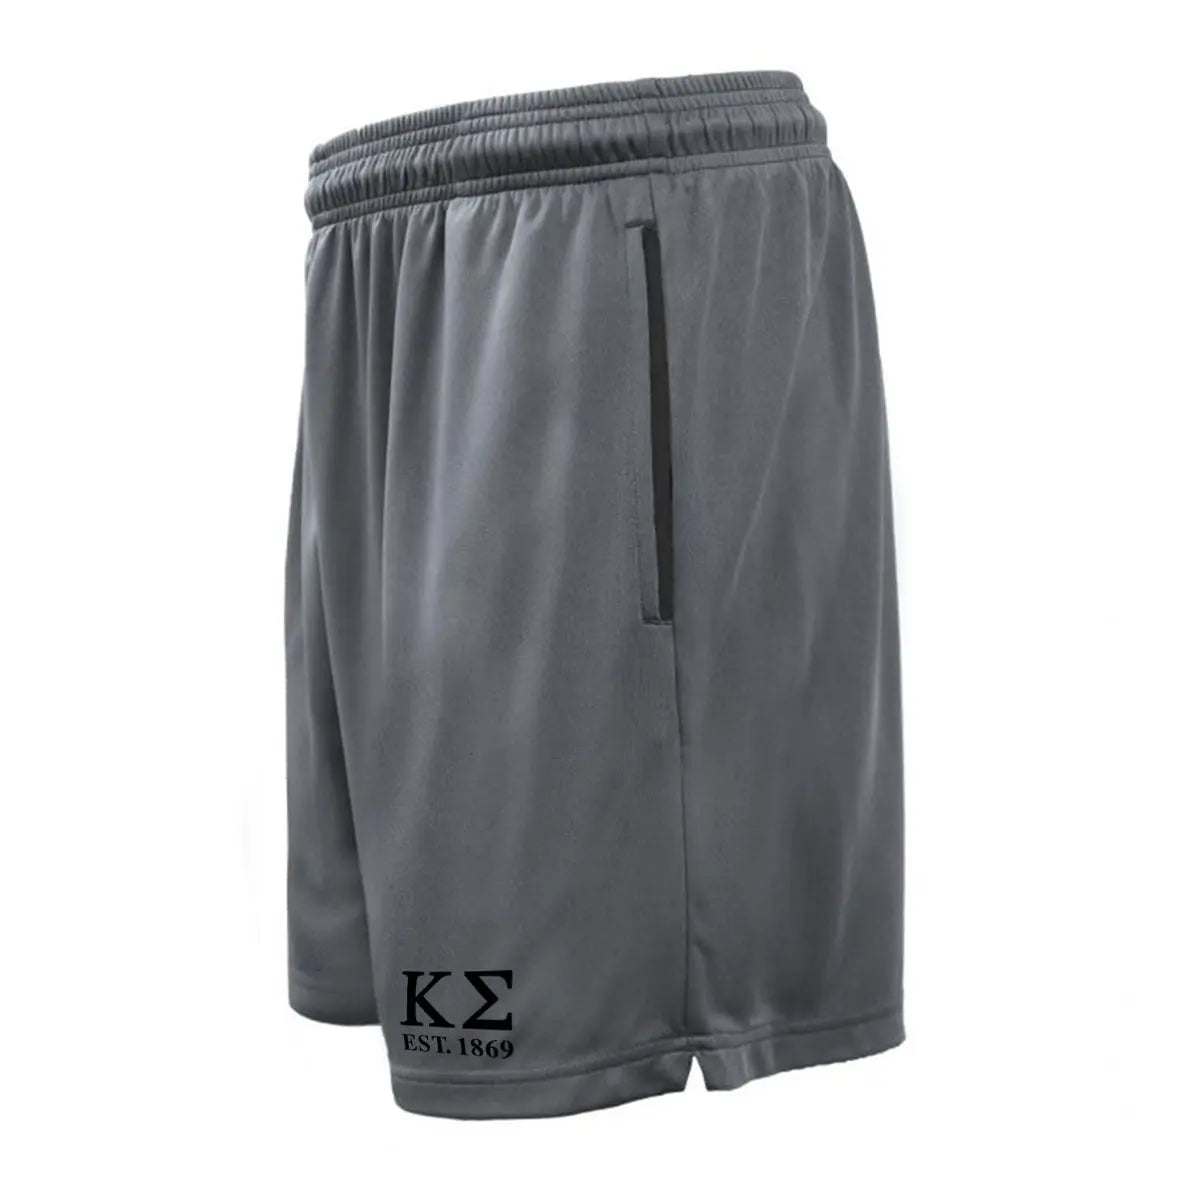 New! Kappa Sig 7in Grey Pocketed Shorts Kappa Sigma